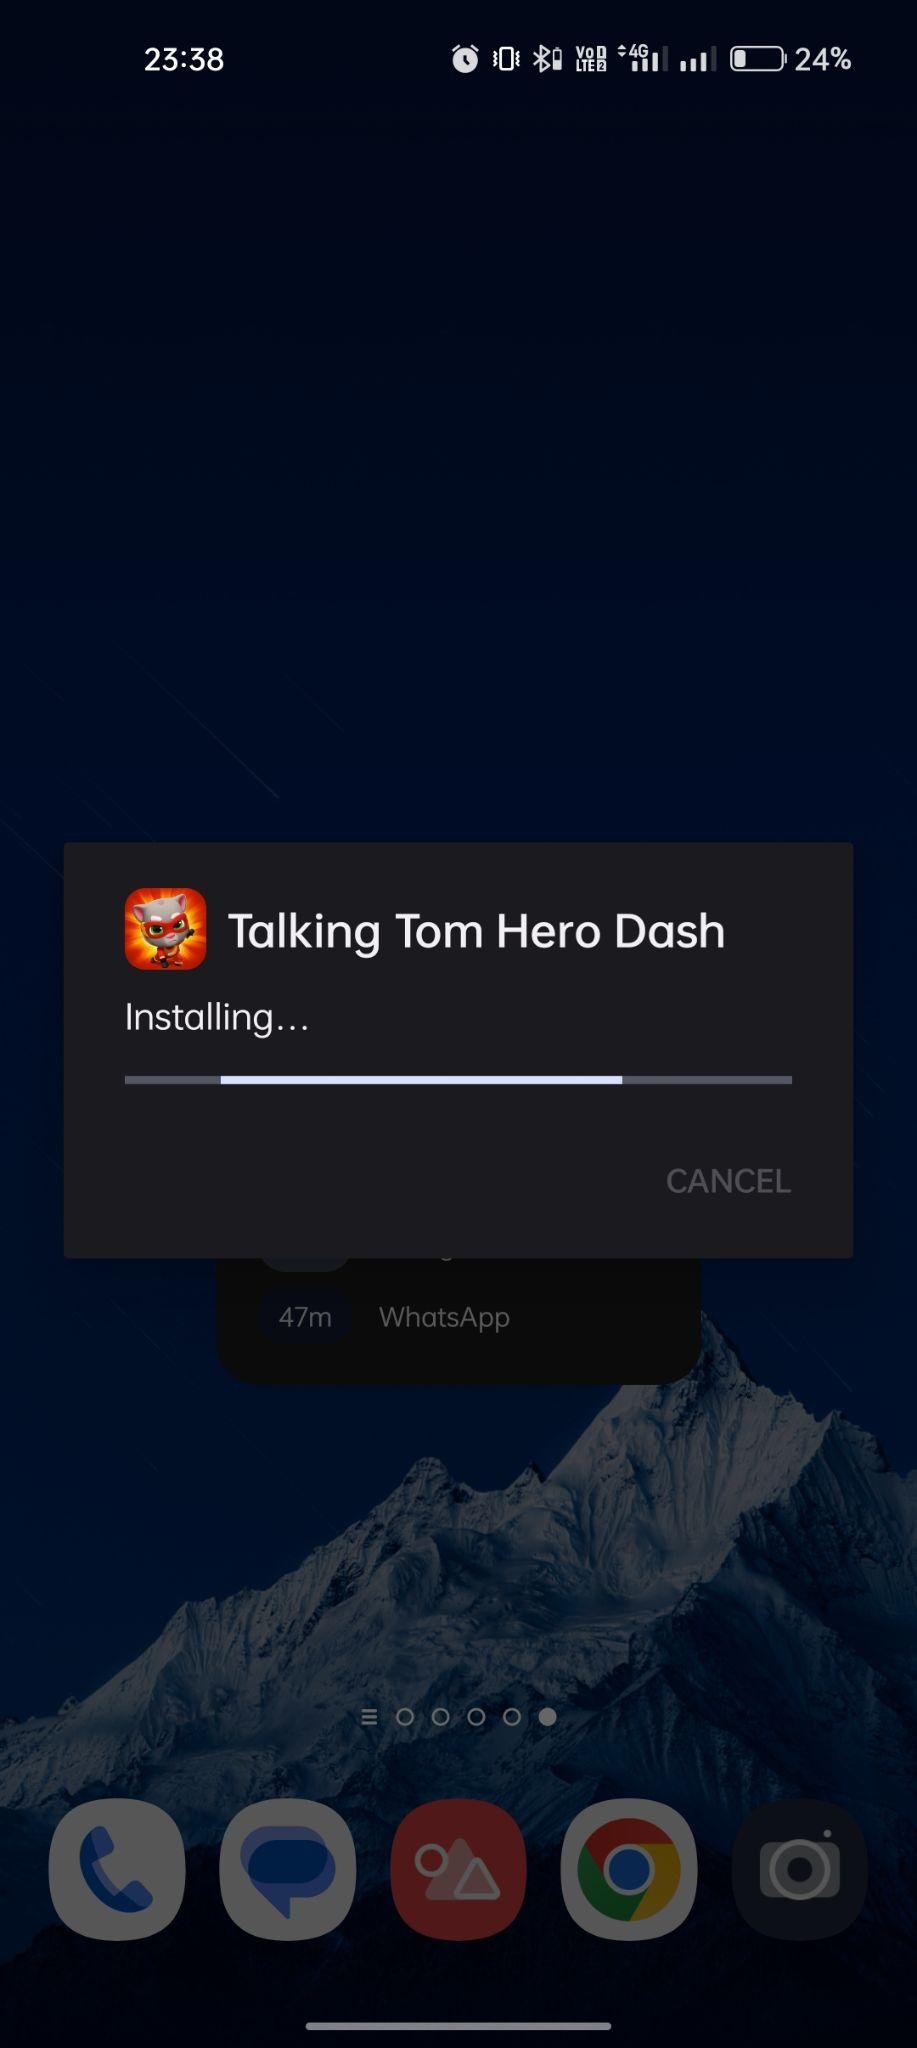 Talking Tom Hero Dash apk installing